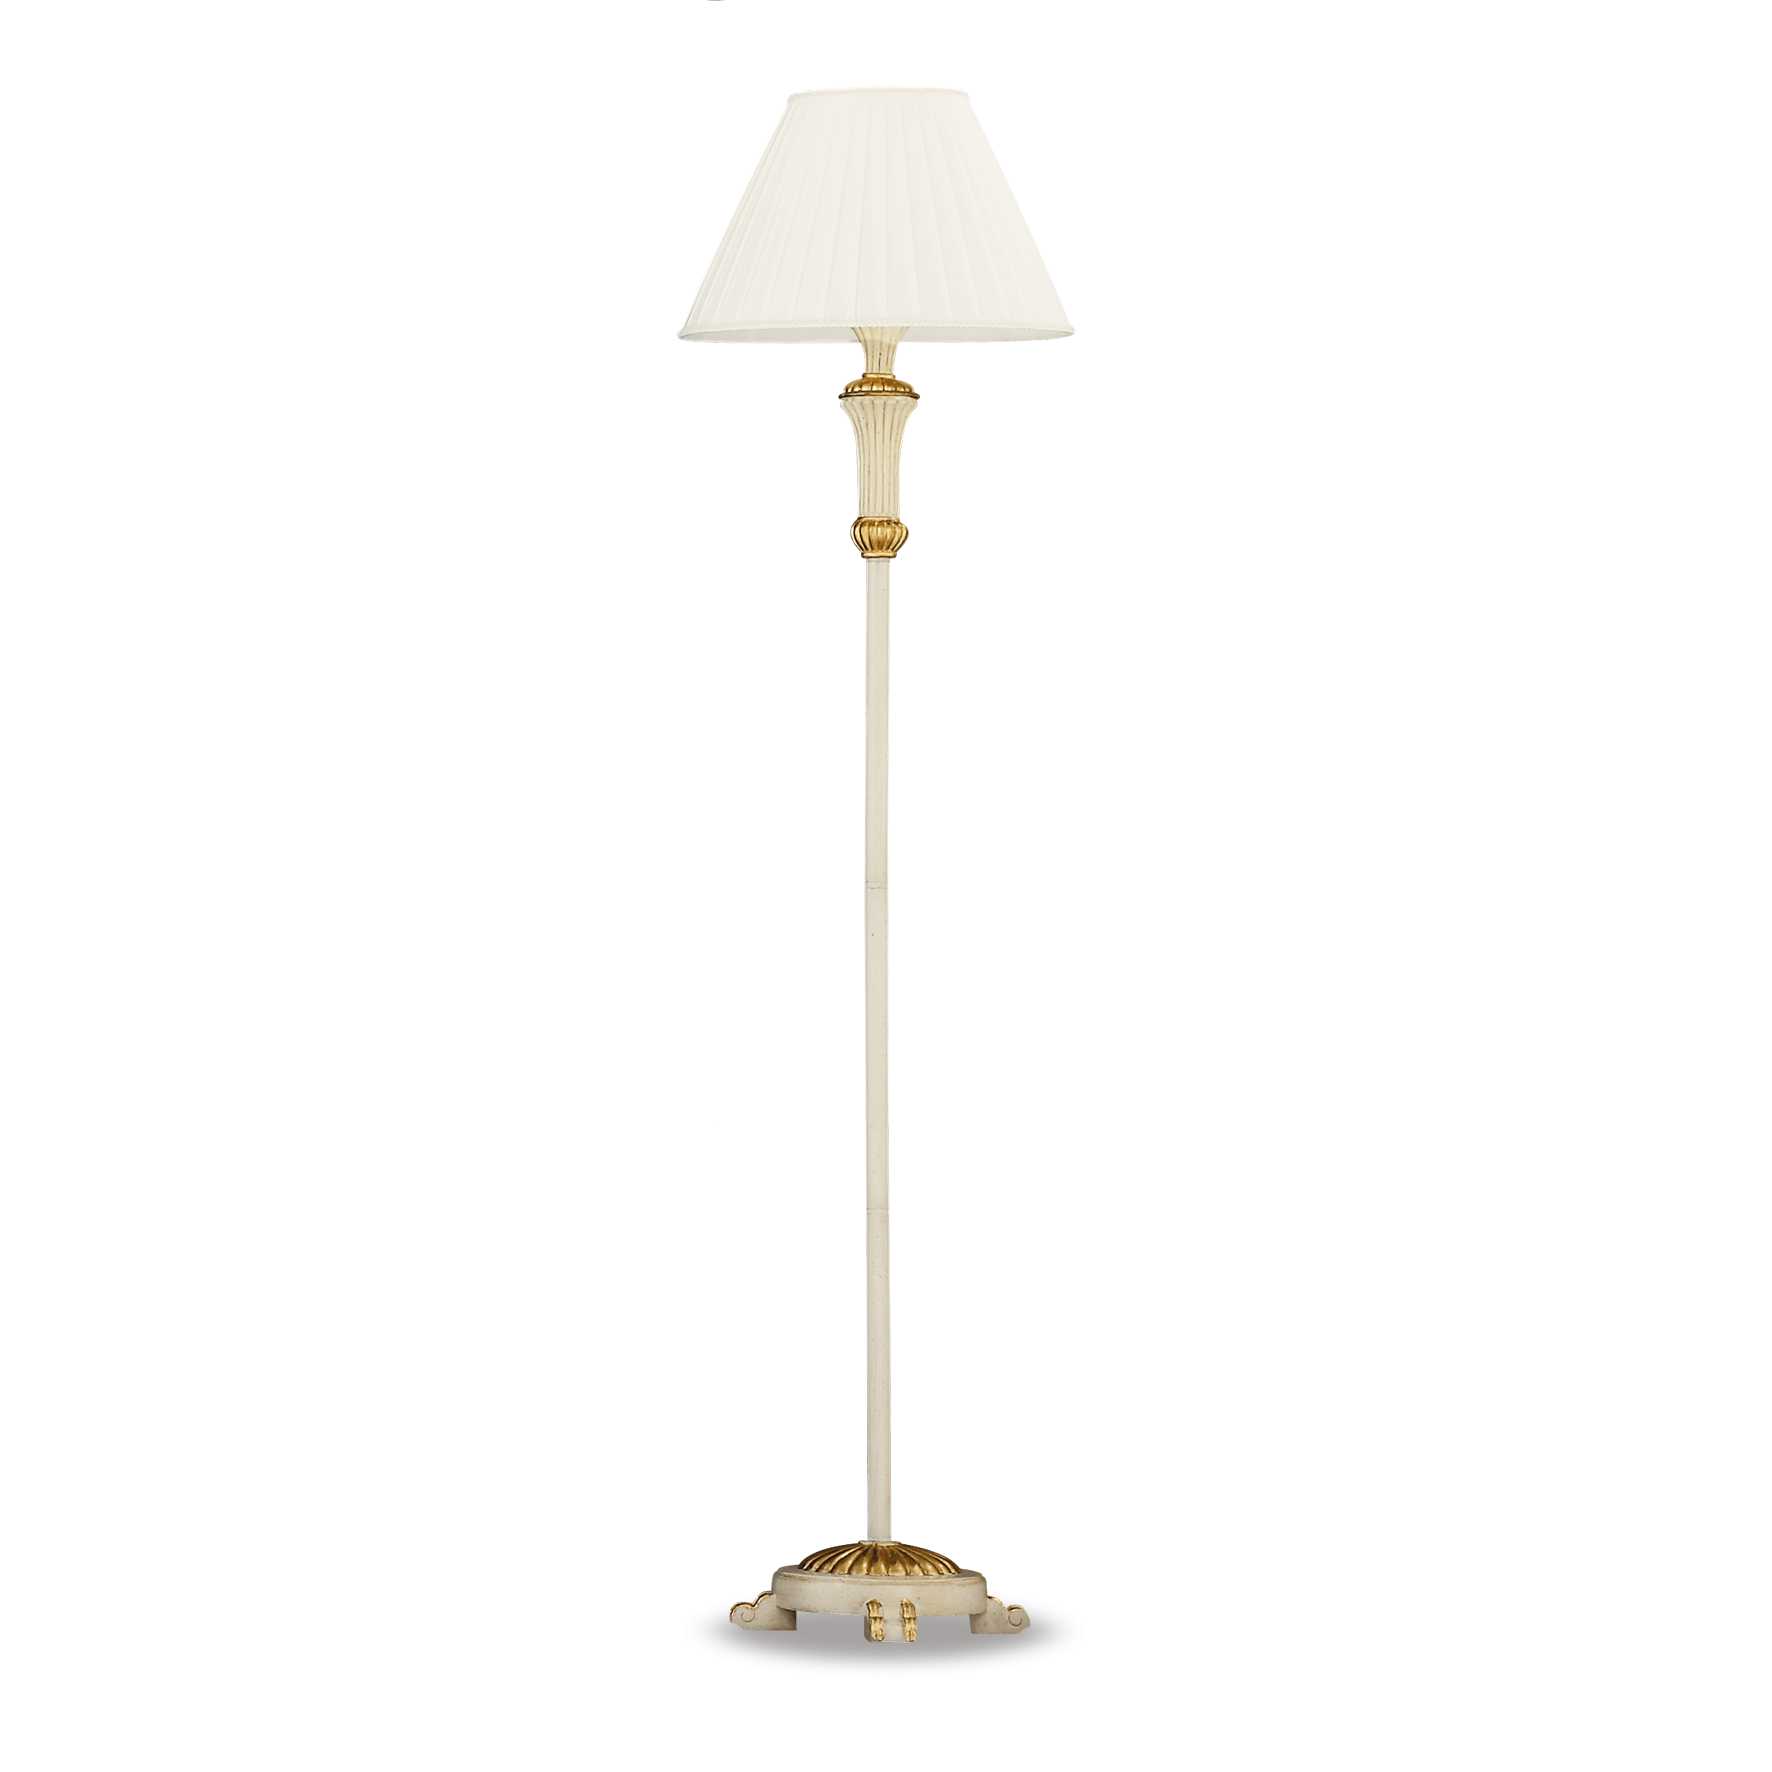 AD hotelska oprema Podna lampa Firenze pt1- Bijele boje slika proizvoda